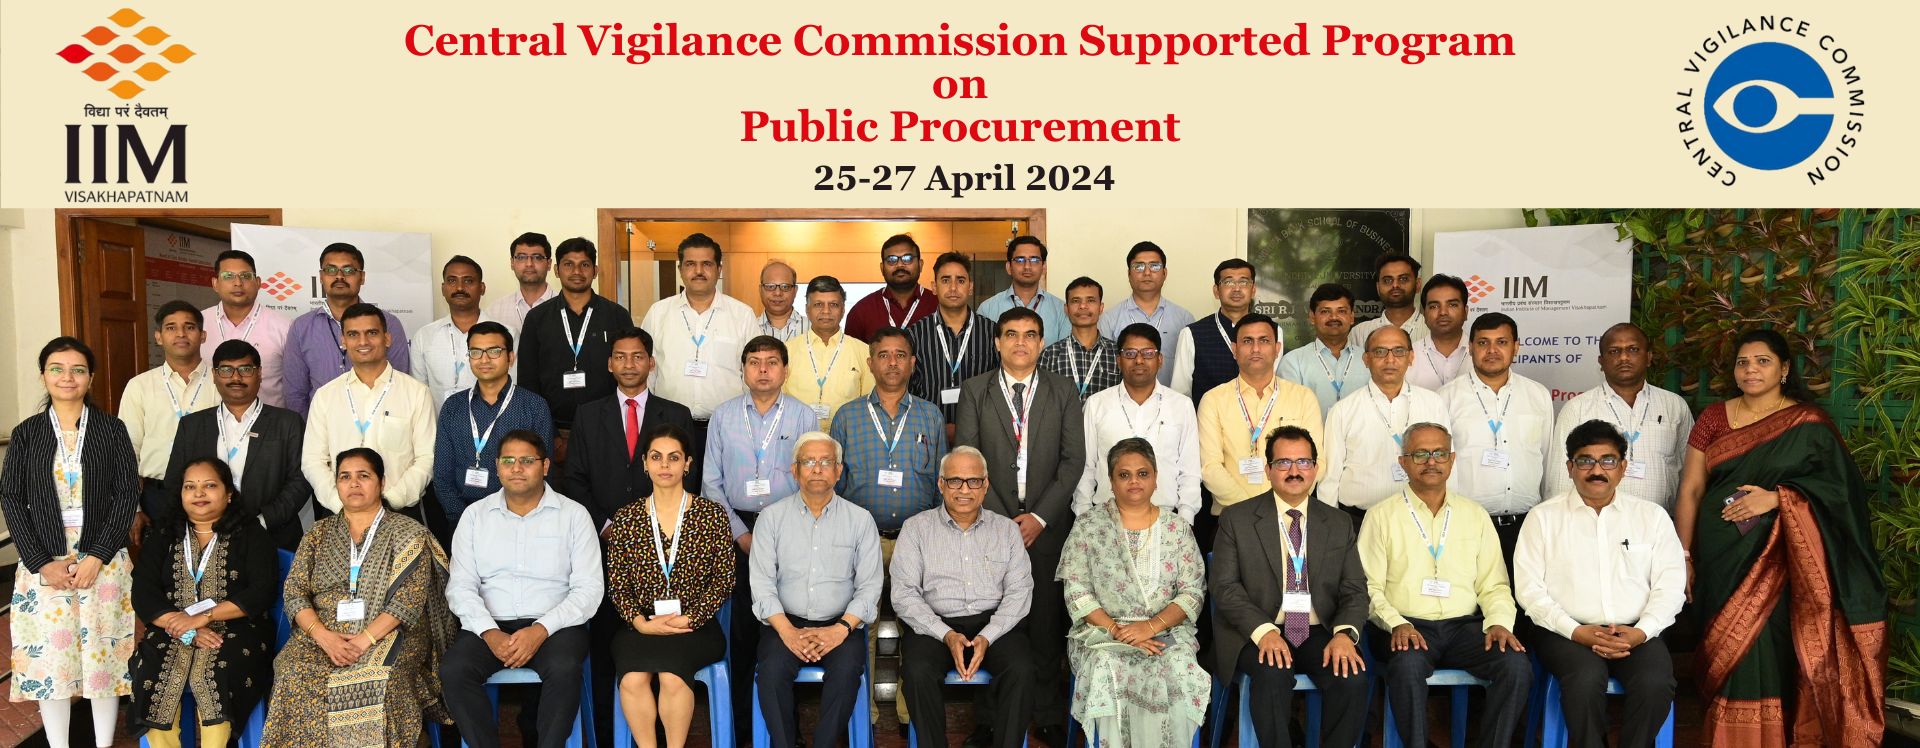 CVC-Supported Program on Public Procurement